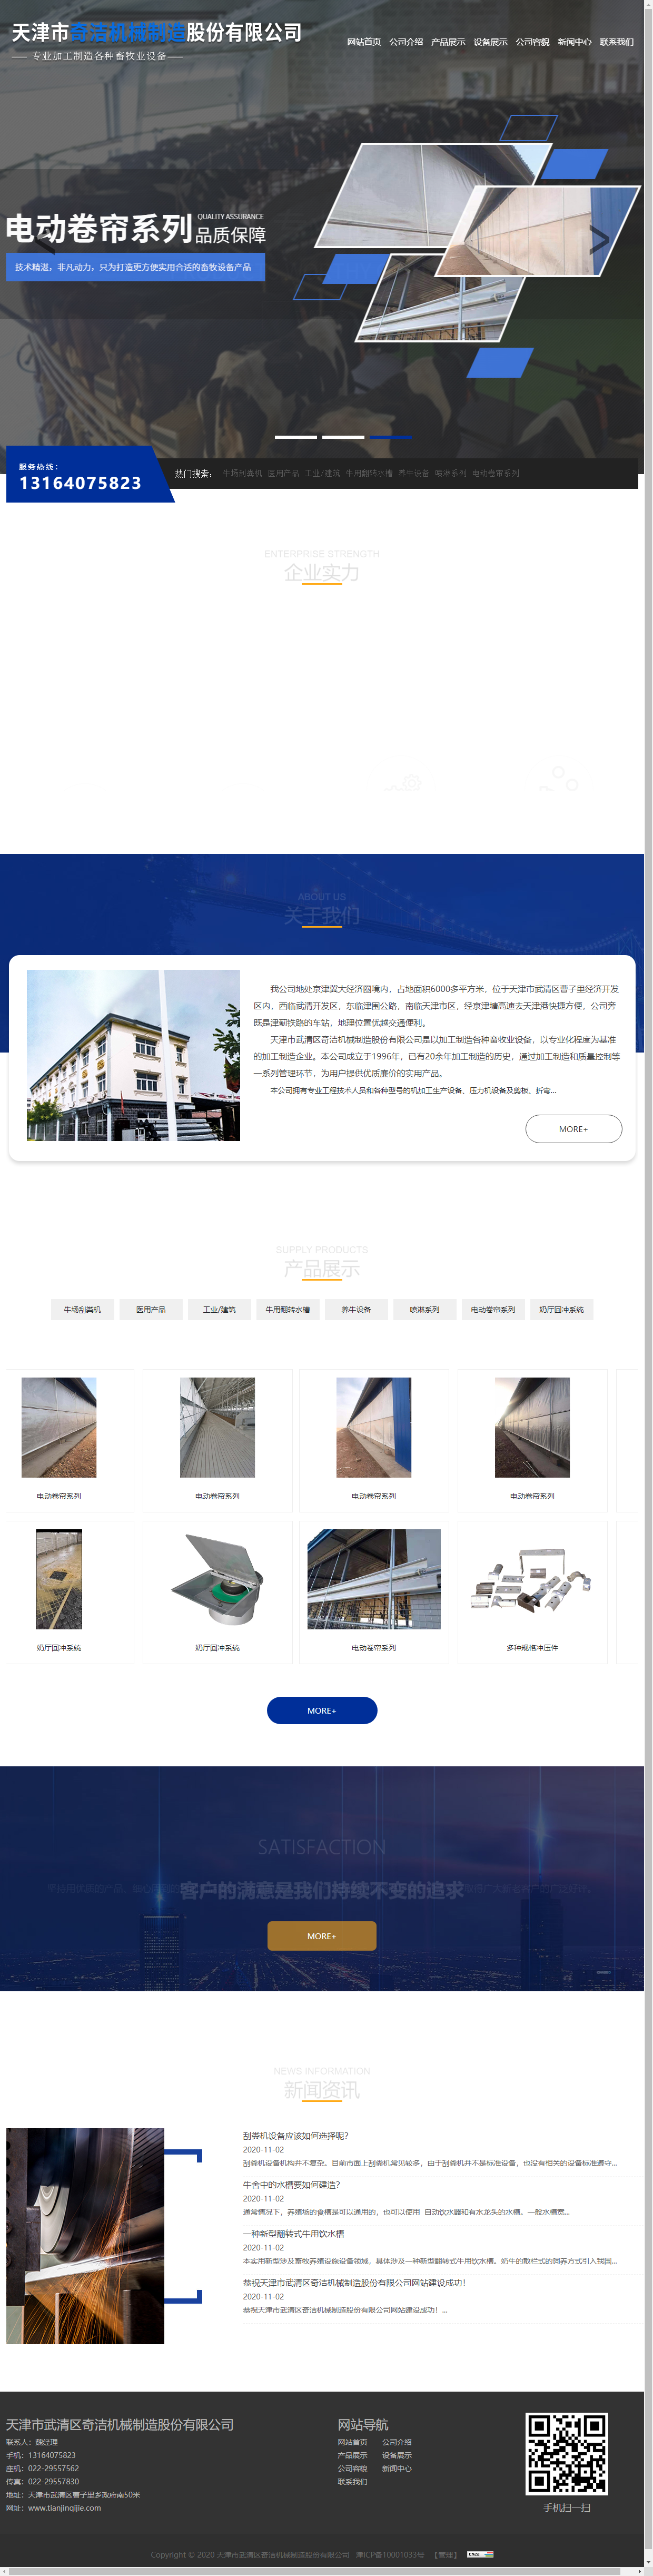 天津市武清区奇洁机械制造股份有限公司网站案例